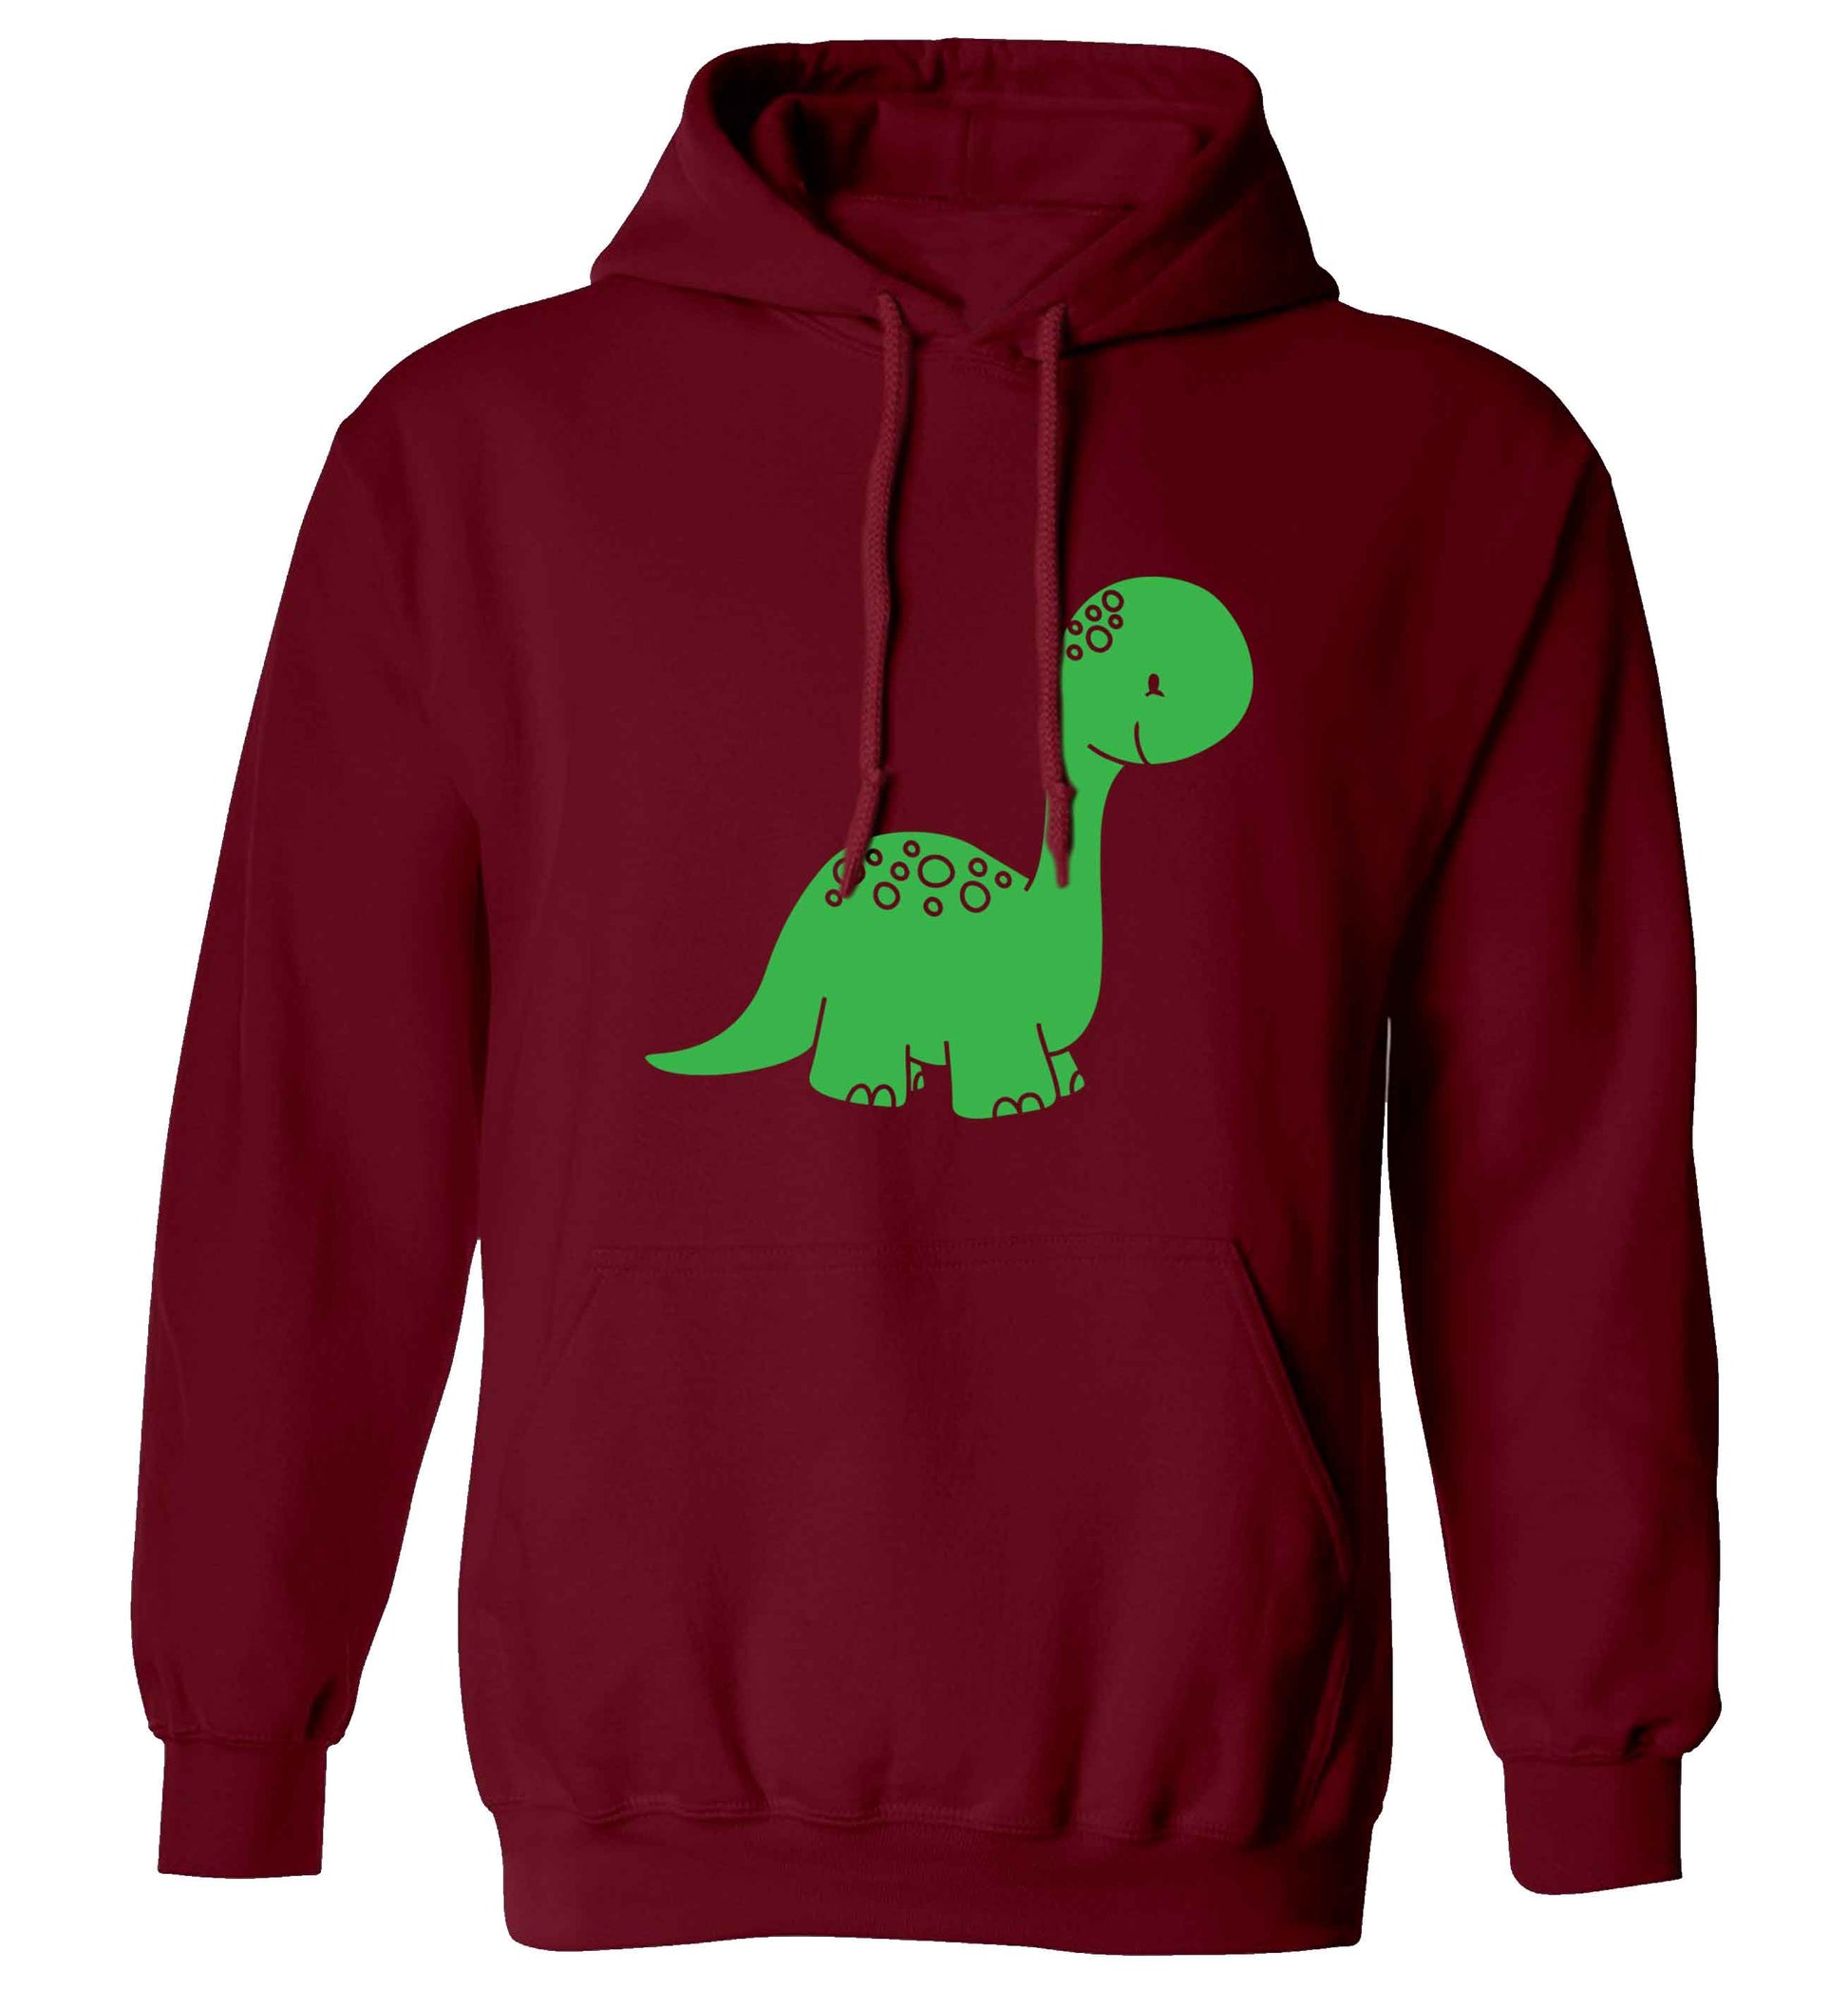 Dinosaur illustration adults unisex maroon hoodie 2XL